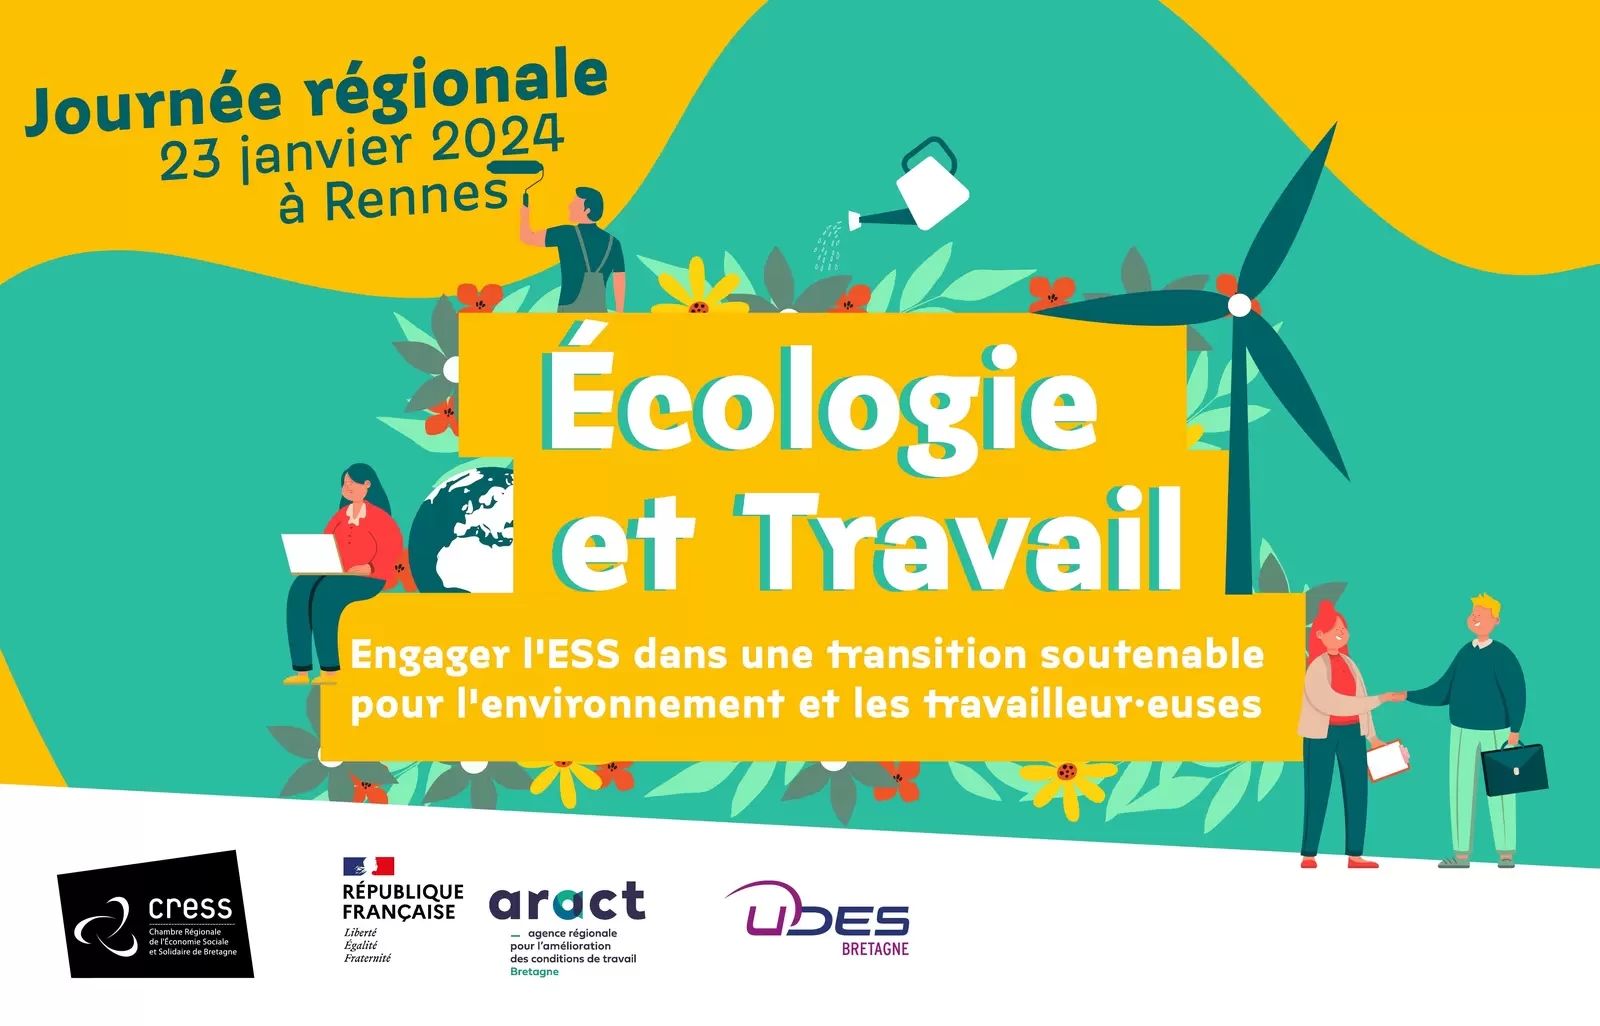 Journée Régionale « Ecologie et travail dans l'ESS » en Bretagne